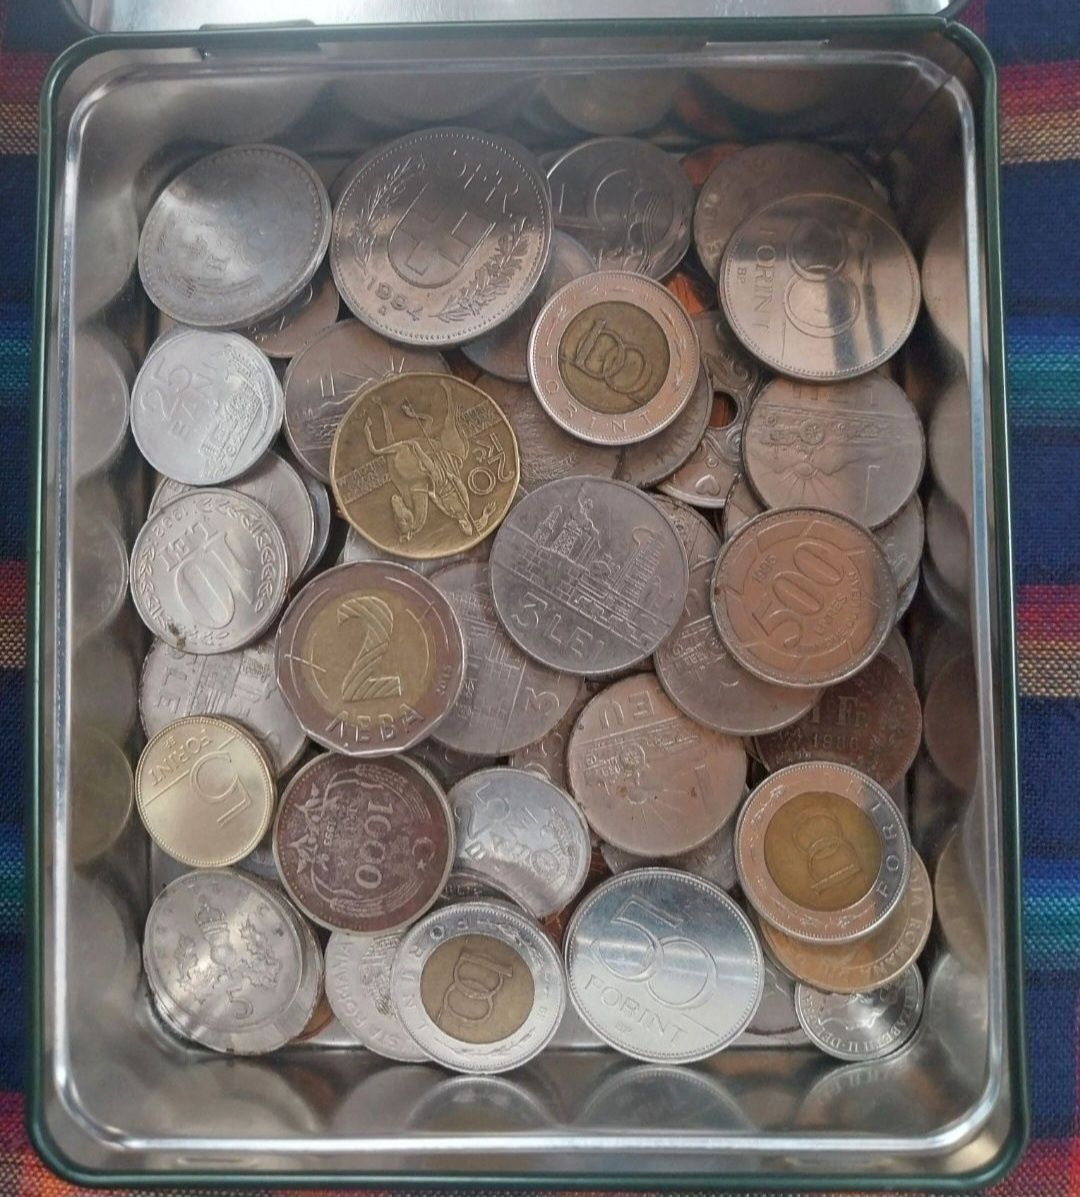 Monede vechi Românești și Străine de colecție.